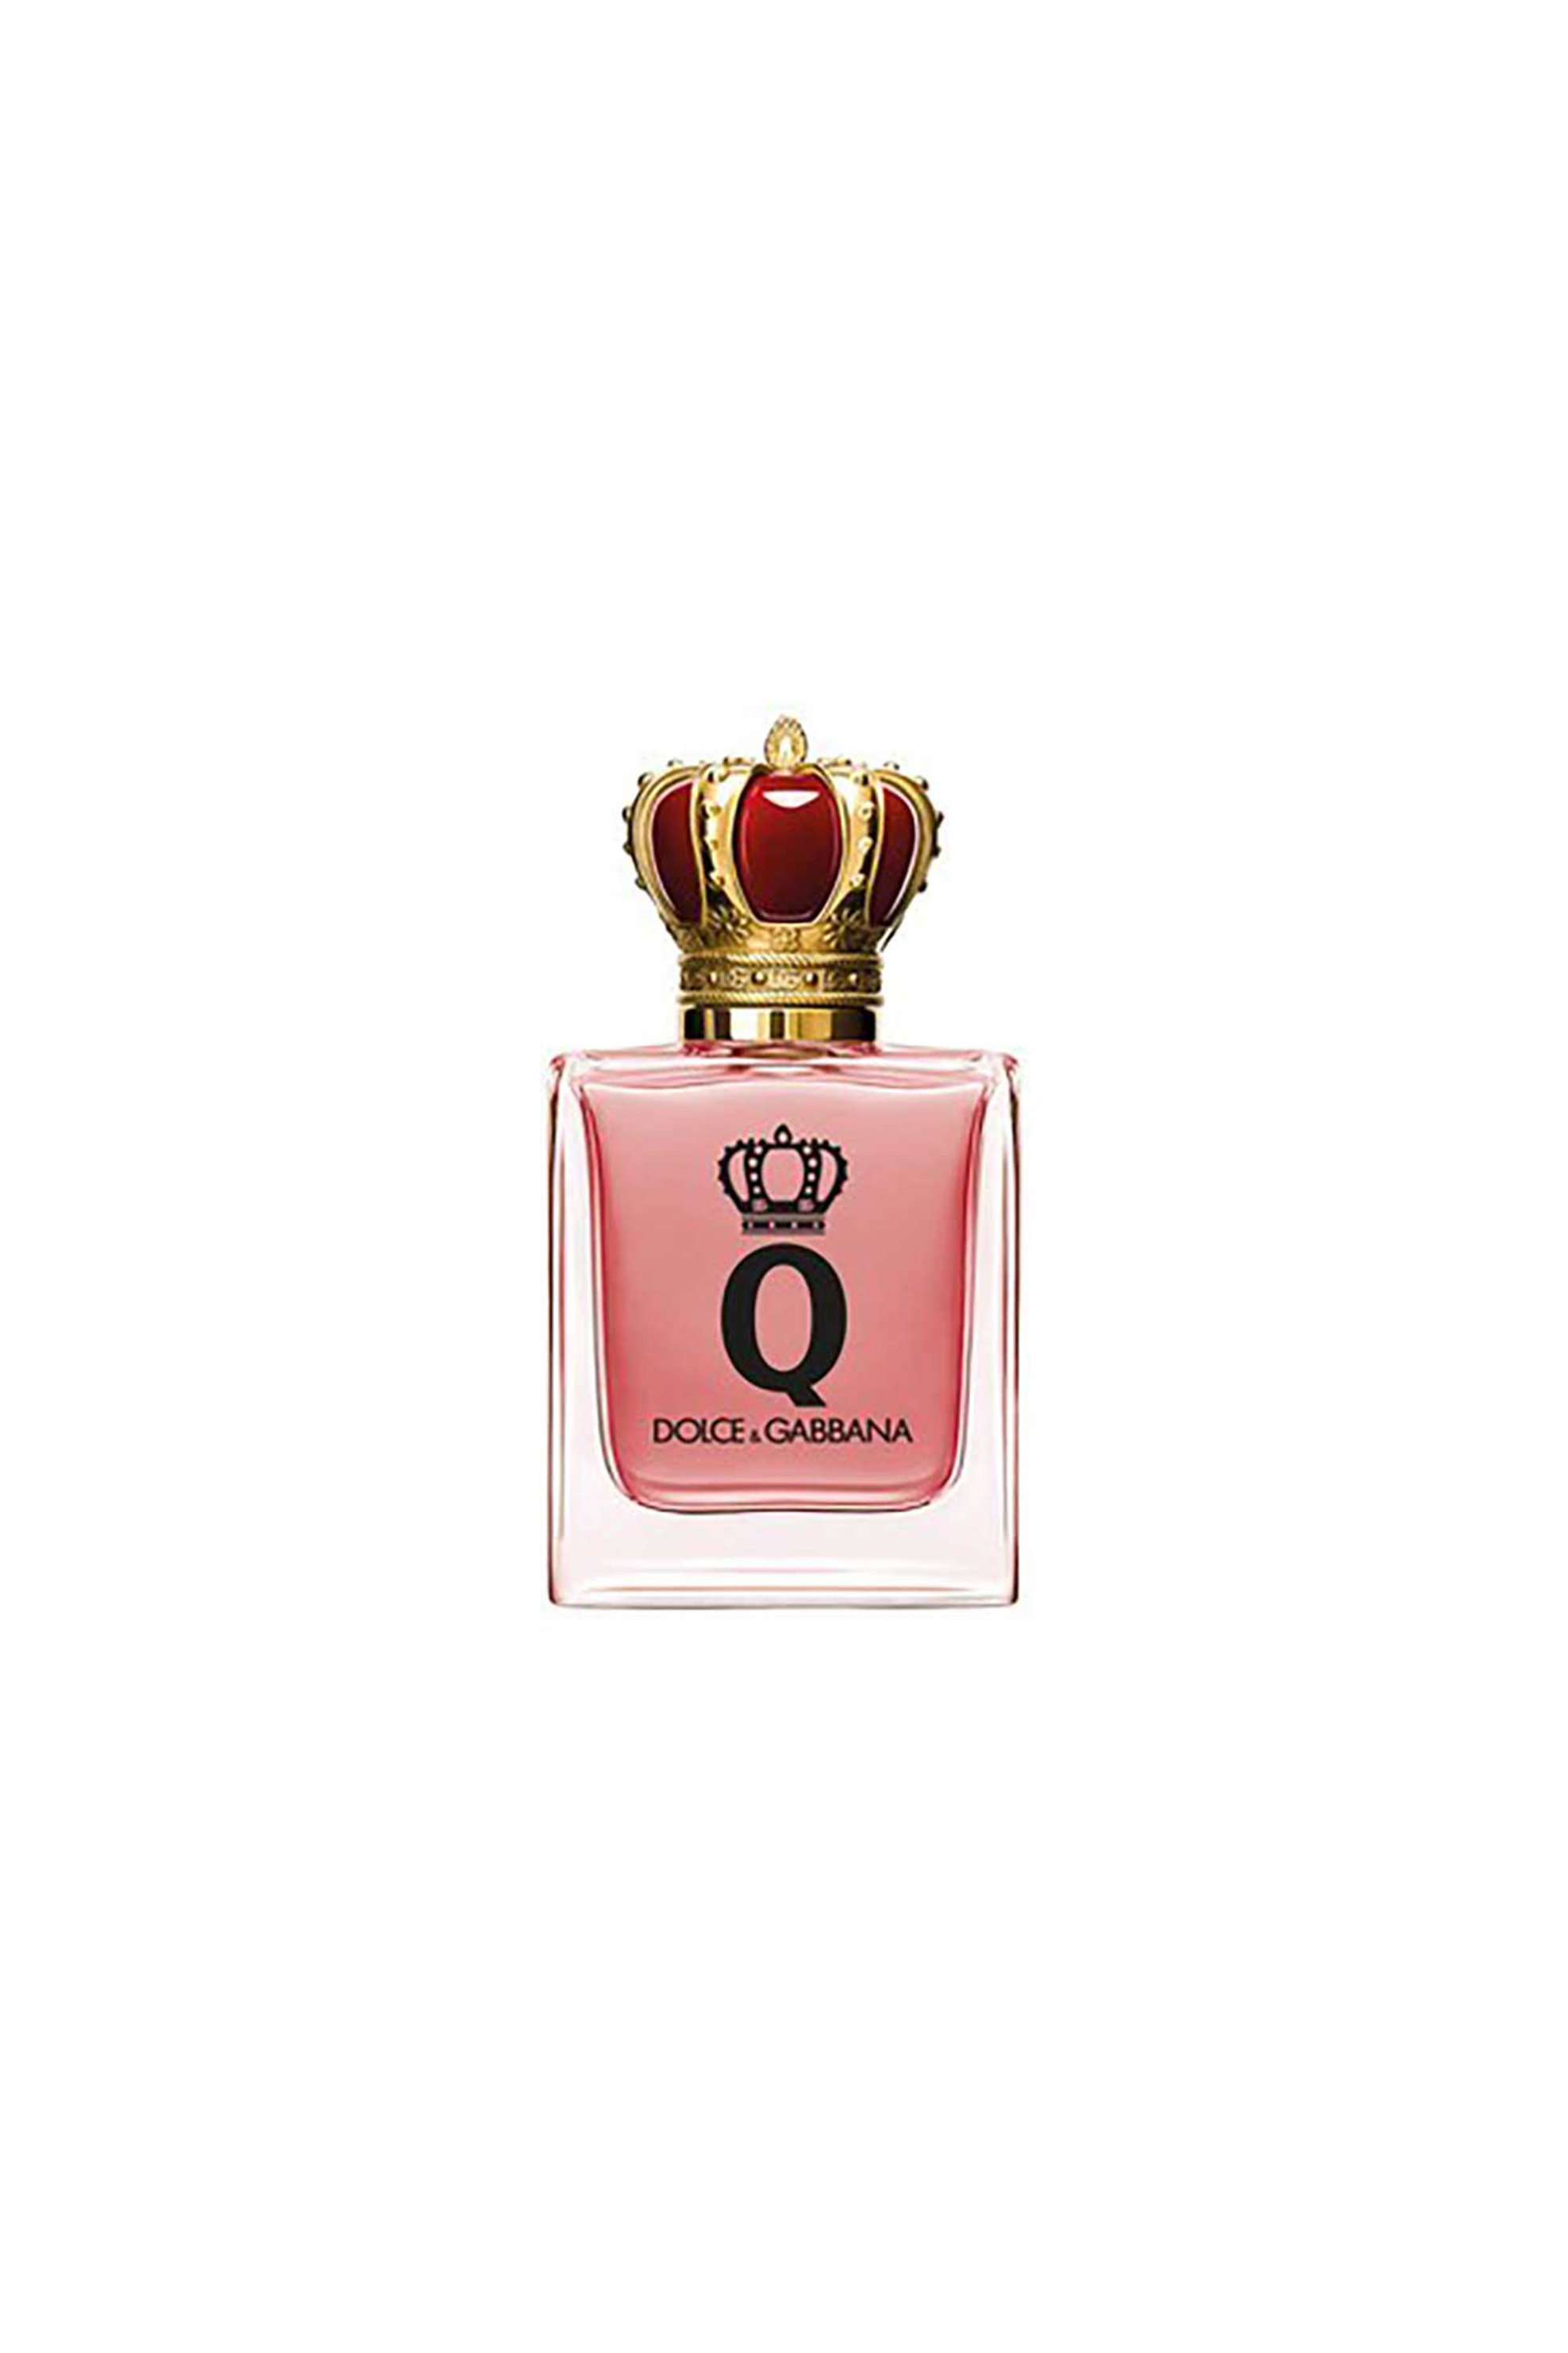 Ομορφιά > ΑΡΩΜΑΤΑ > Γυναικεία Αρώματα > Eau de Parfum - Parfum Dolce & Gabbana Q by Dolce&Gabbana Eau de Parfum Intense